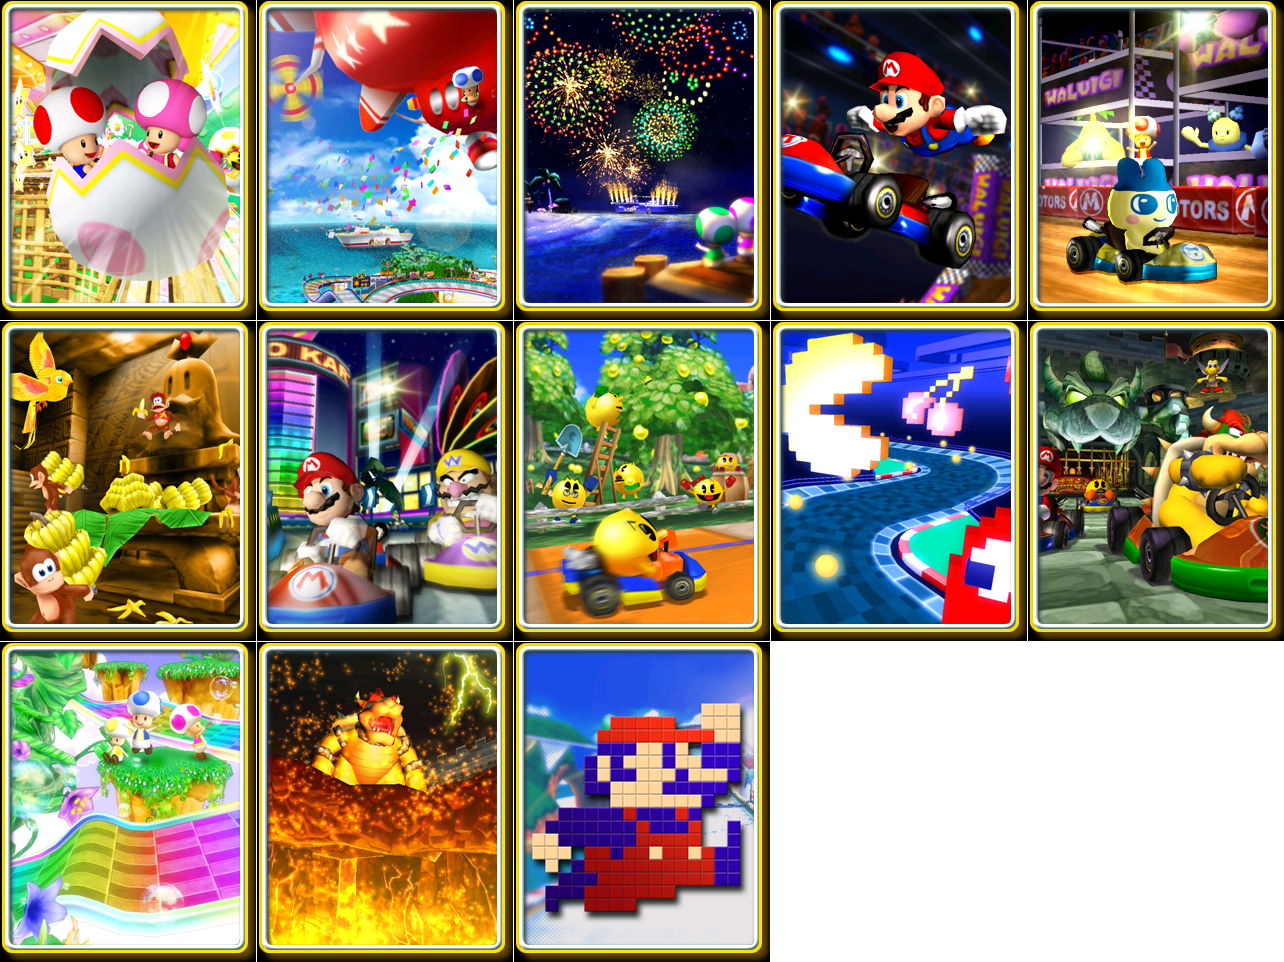 Mario Kart Arcade GP 2 - Credits Images